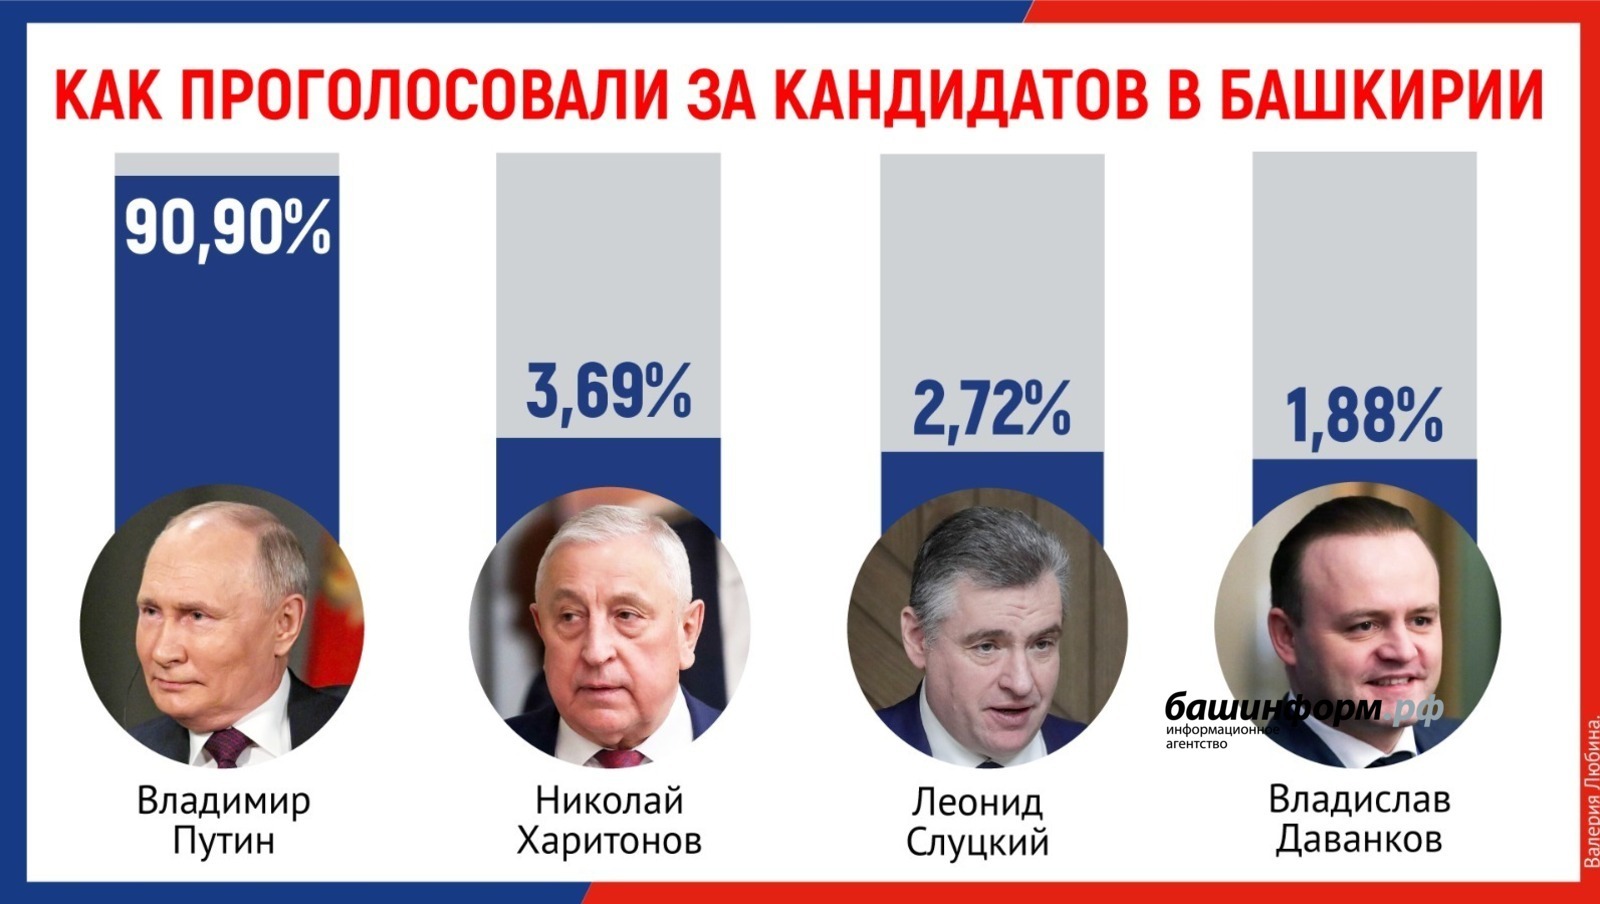 Итоги выборов президента РФ подвели в Центризбиркоме Башкирии